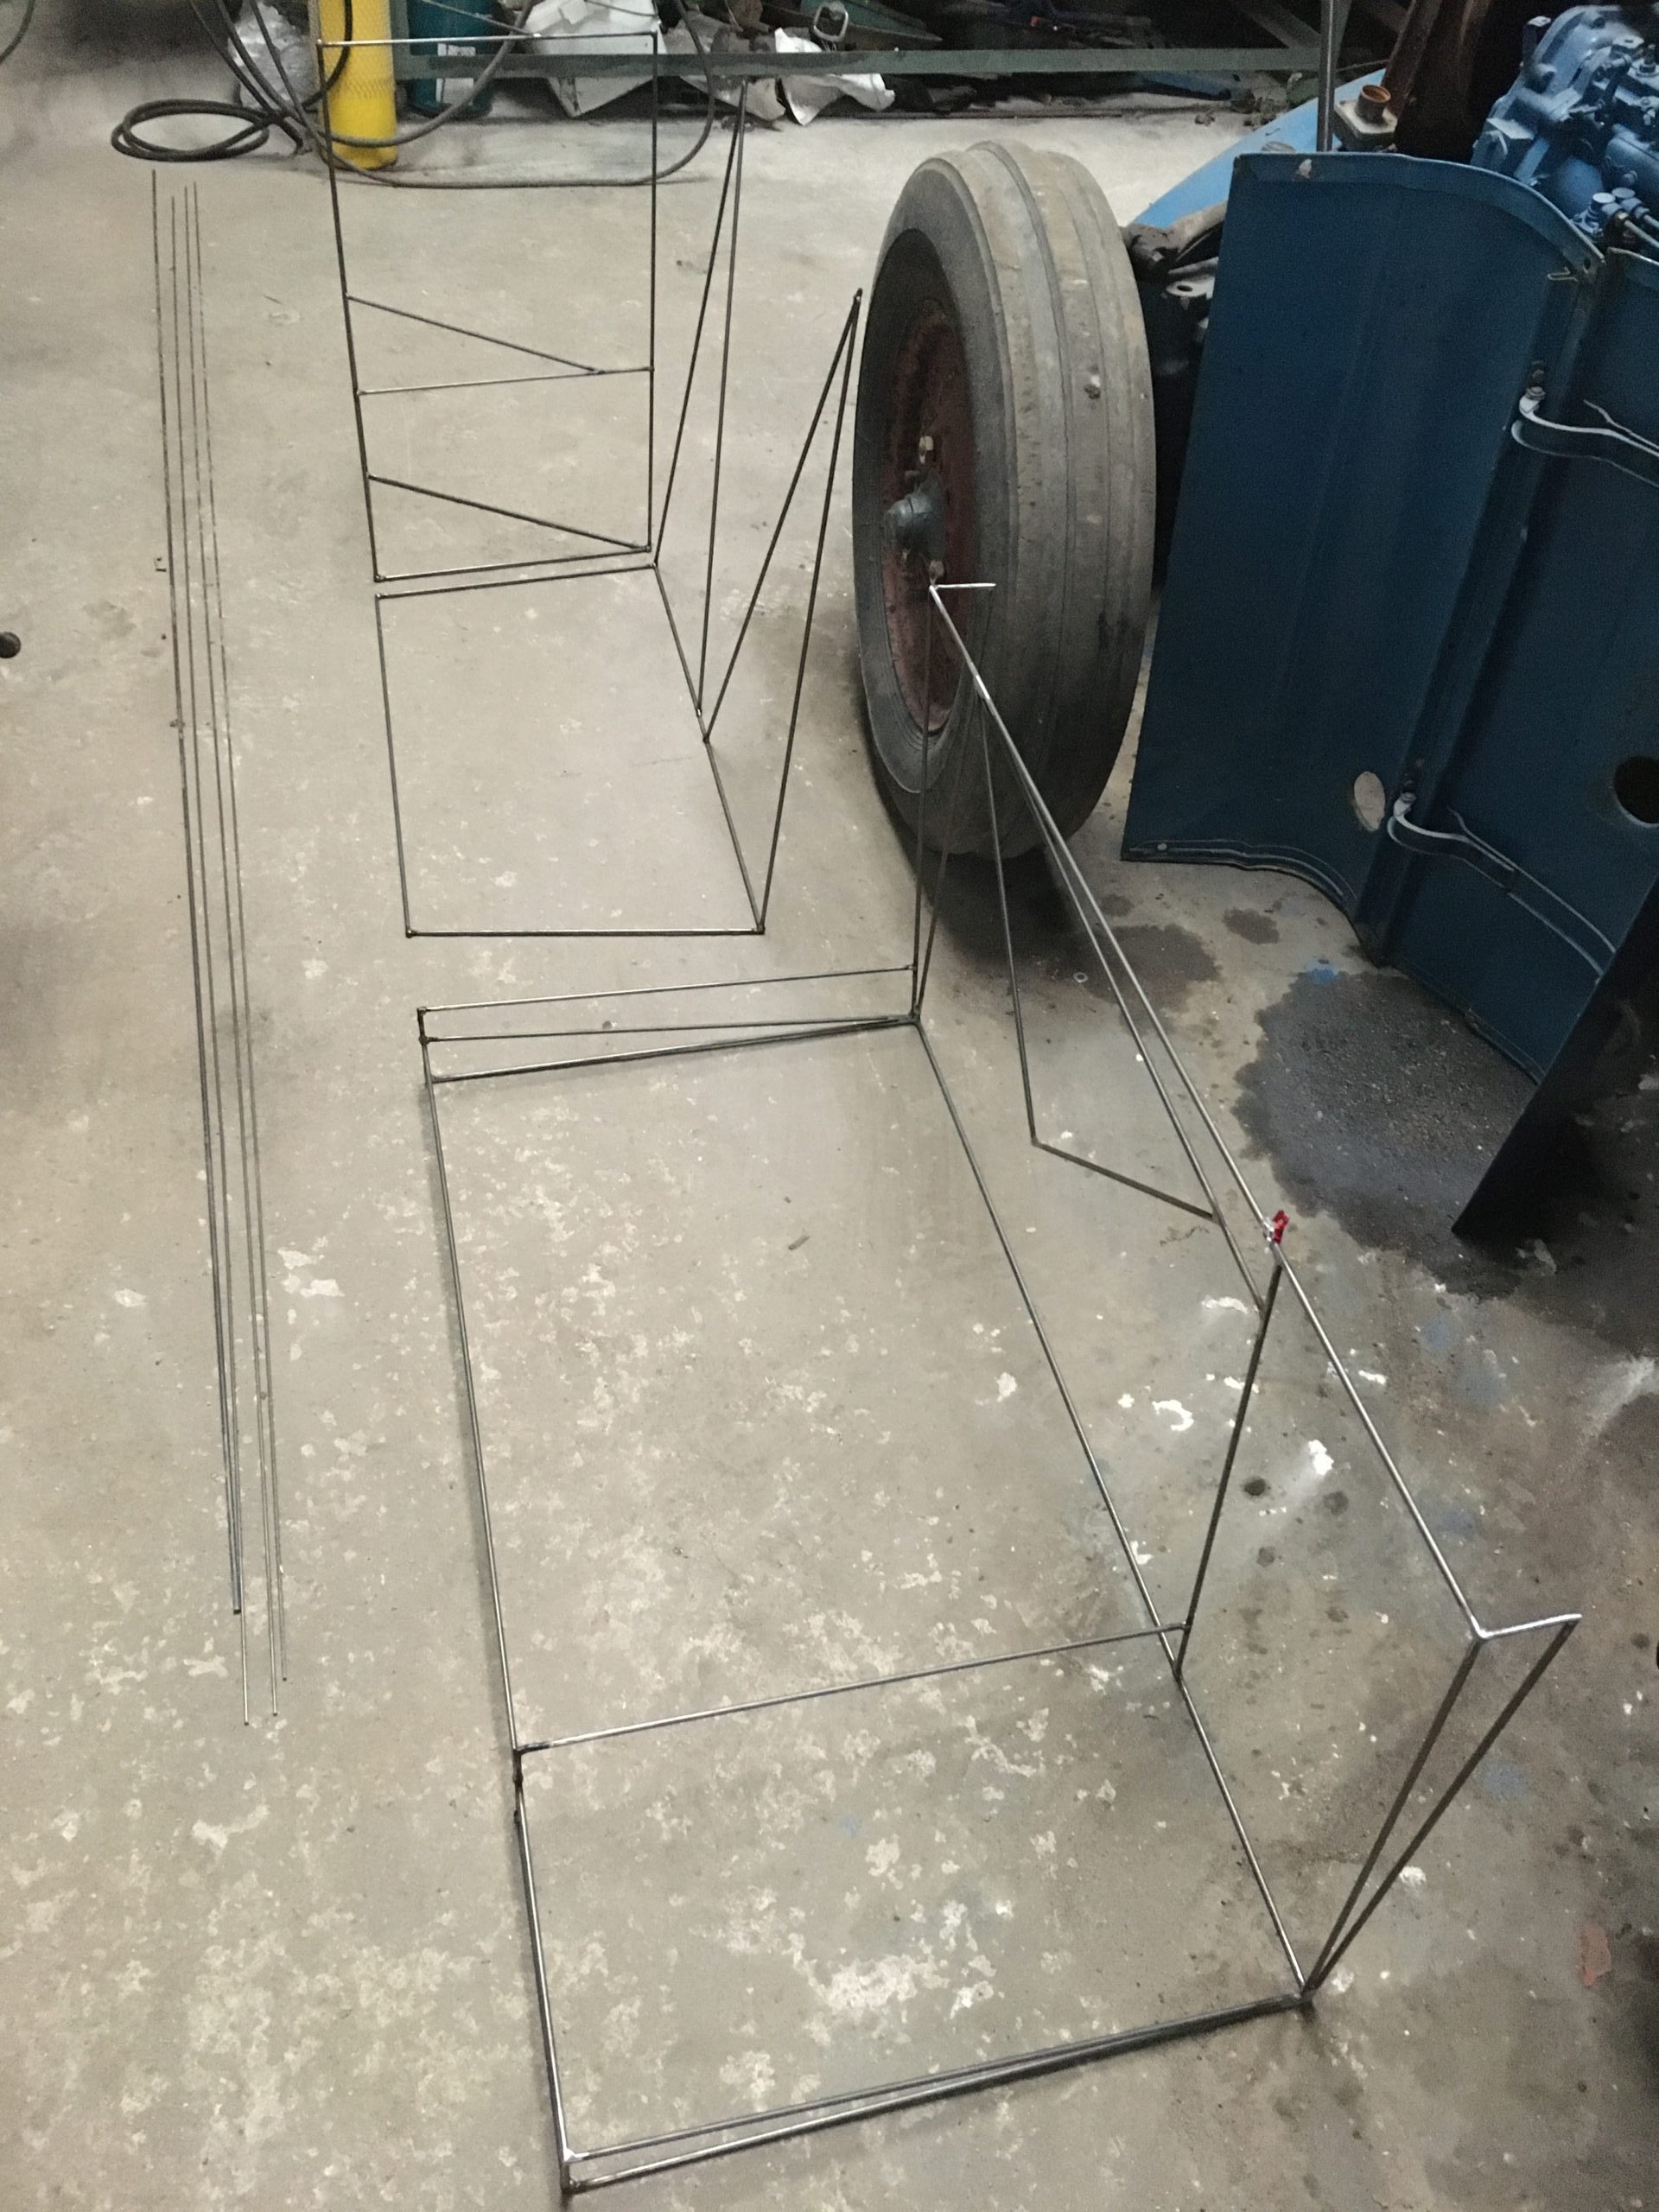 welded metal frames on floor in workshop